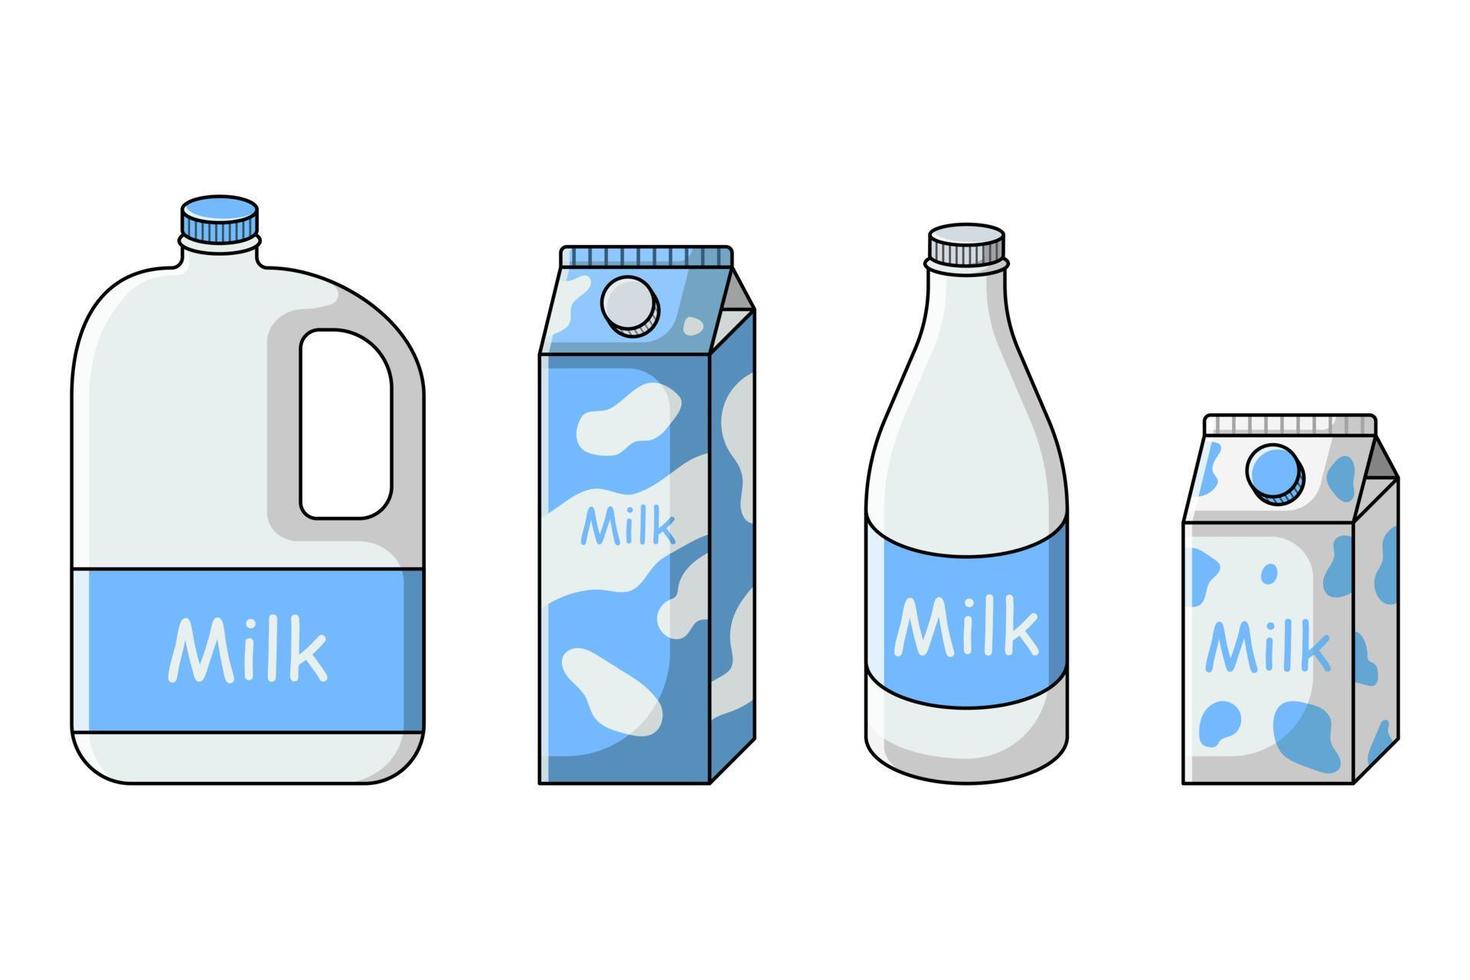 leite definido em diferentes embalagens cartonadas, garrafa, galão, vasilha. ilustração vetorial isolado no fundo branco. estilo de desenho animado de linha plana. vetor